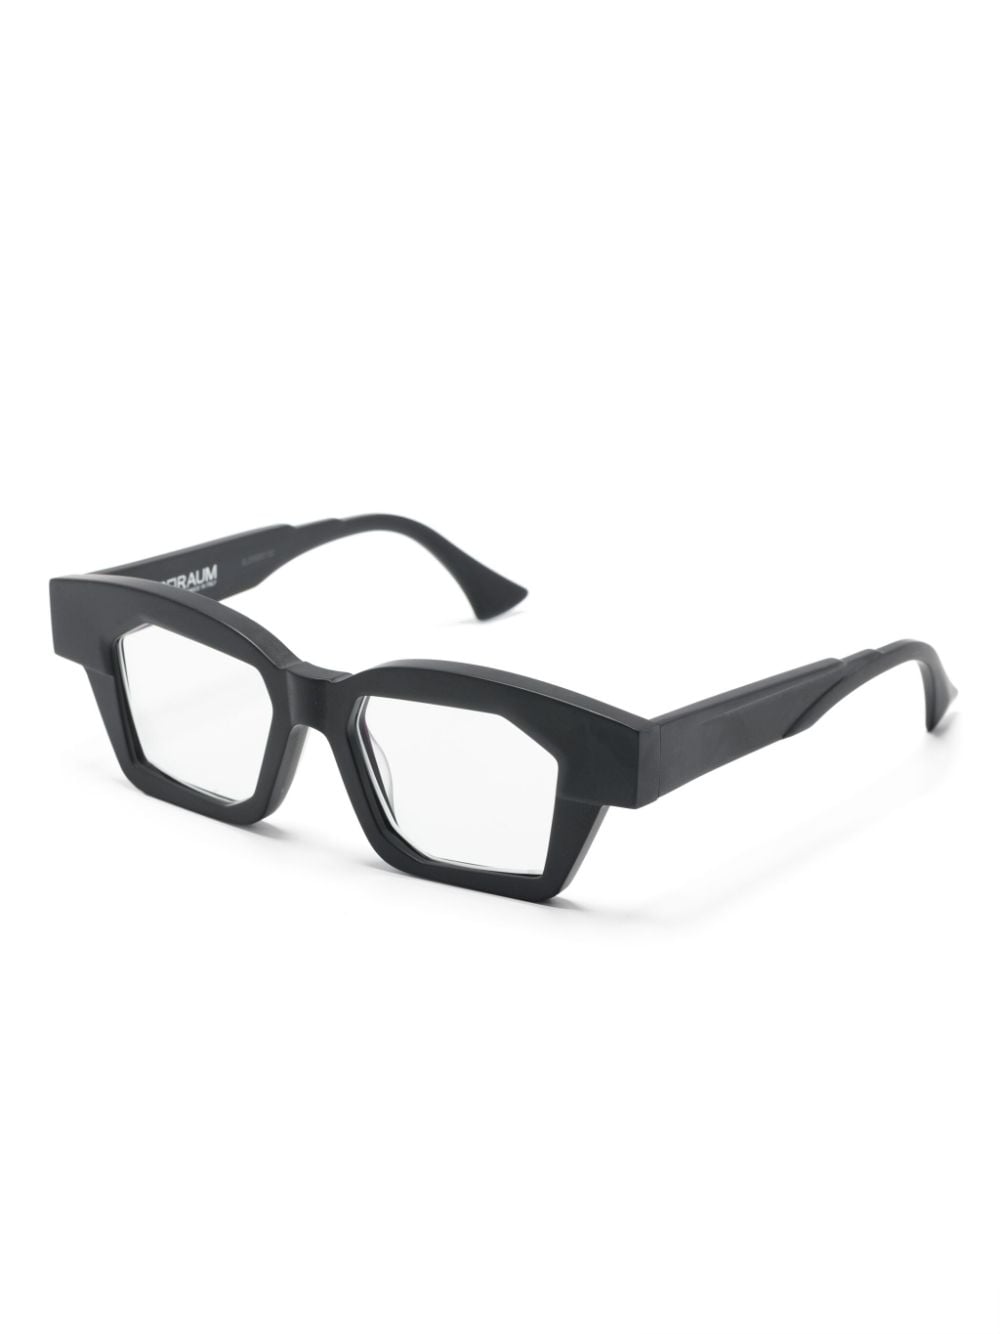 K36 方框眼镜